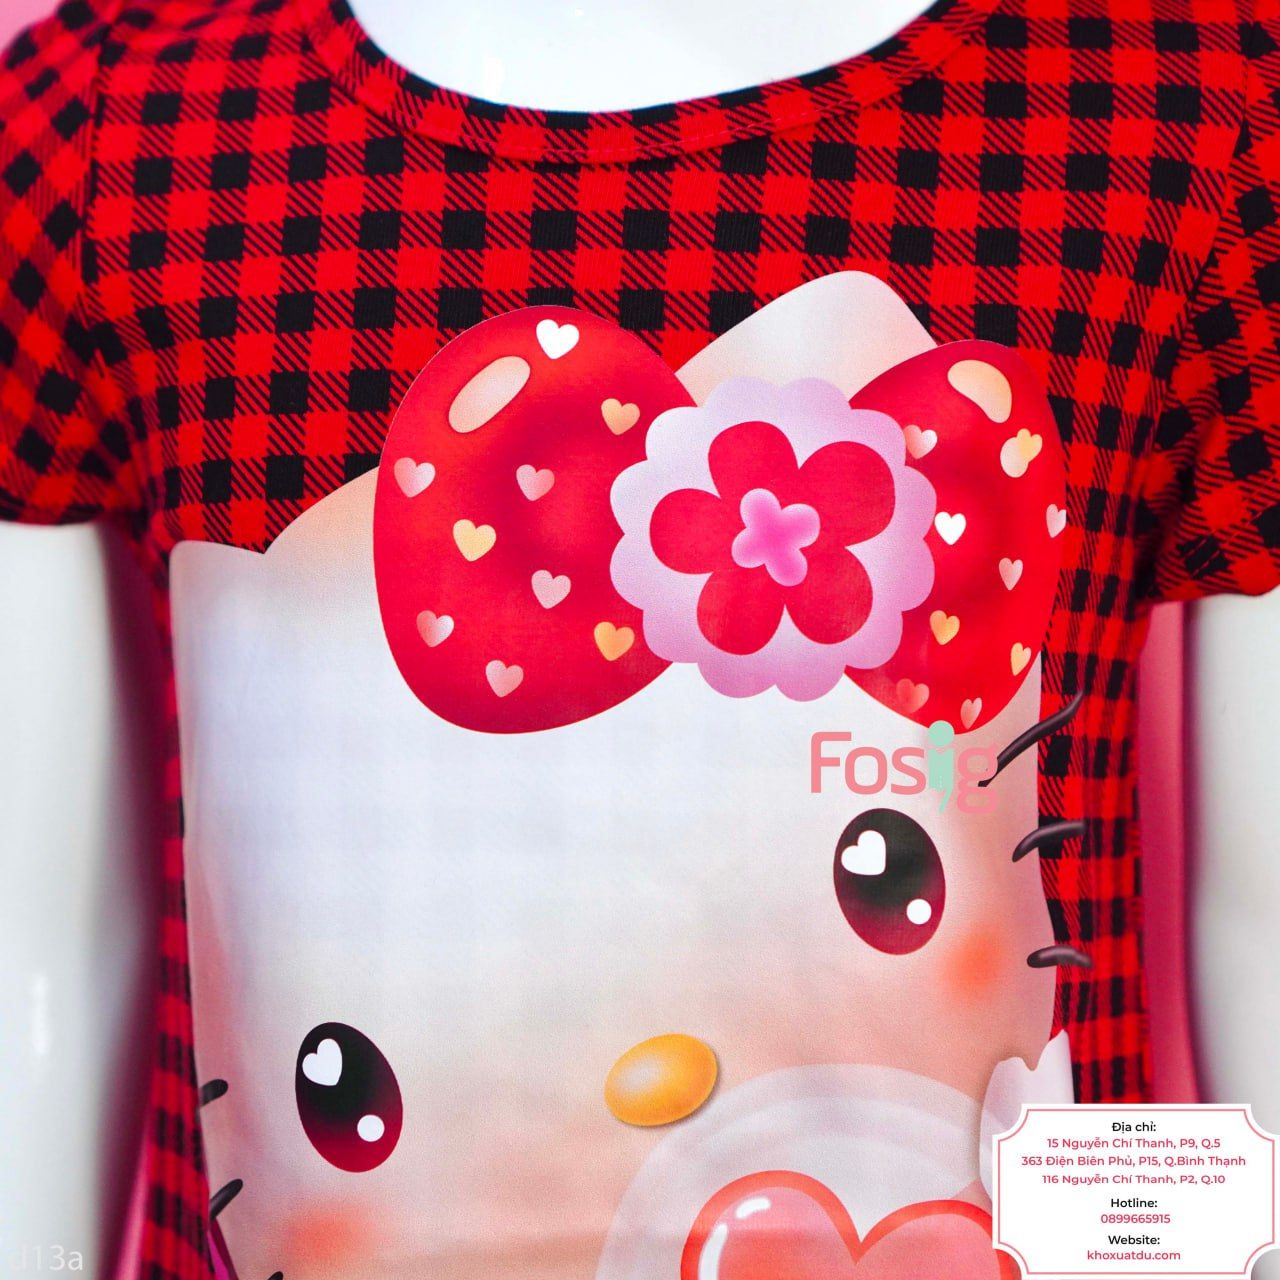  [17-18kg] Đầm Tay Ngắn Bé Gái HM130 - Caro Đỏ Hello Kitty 